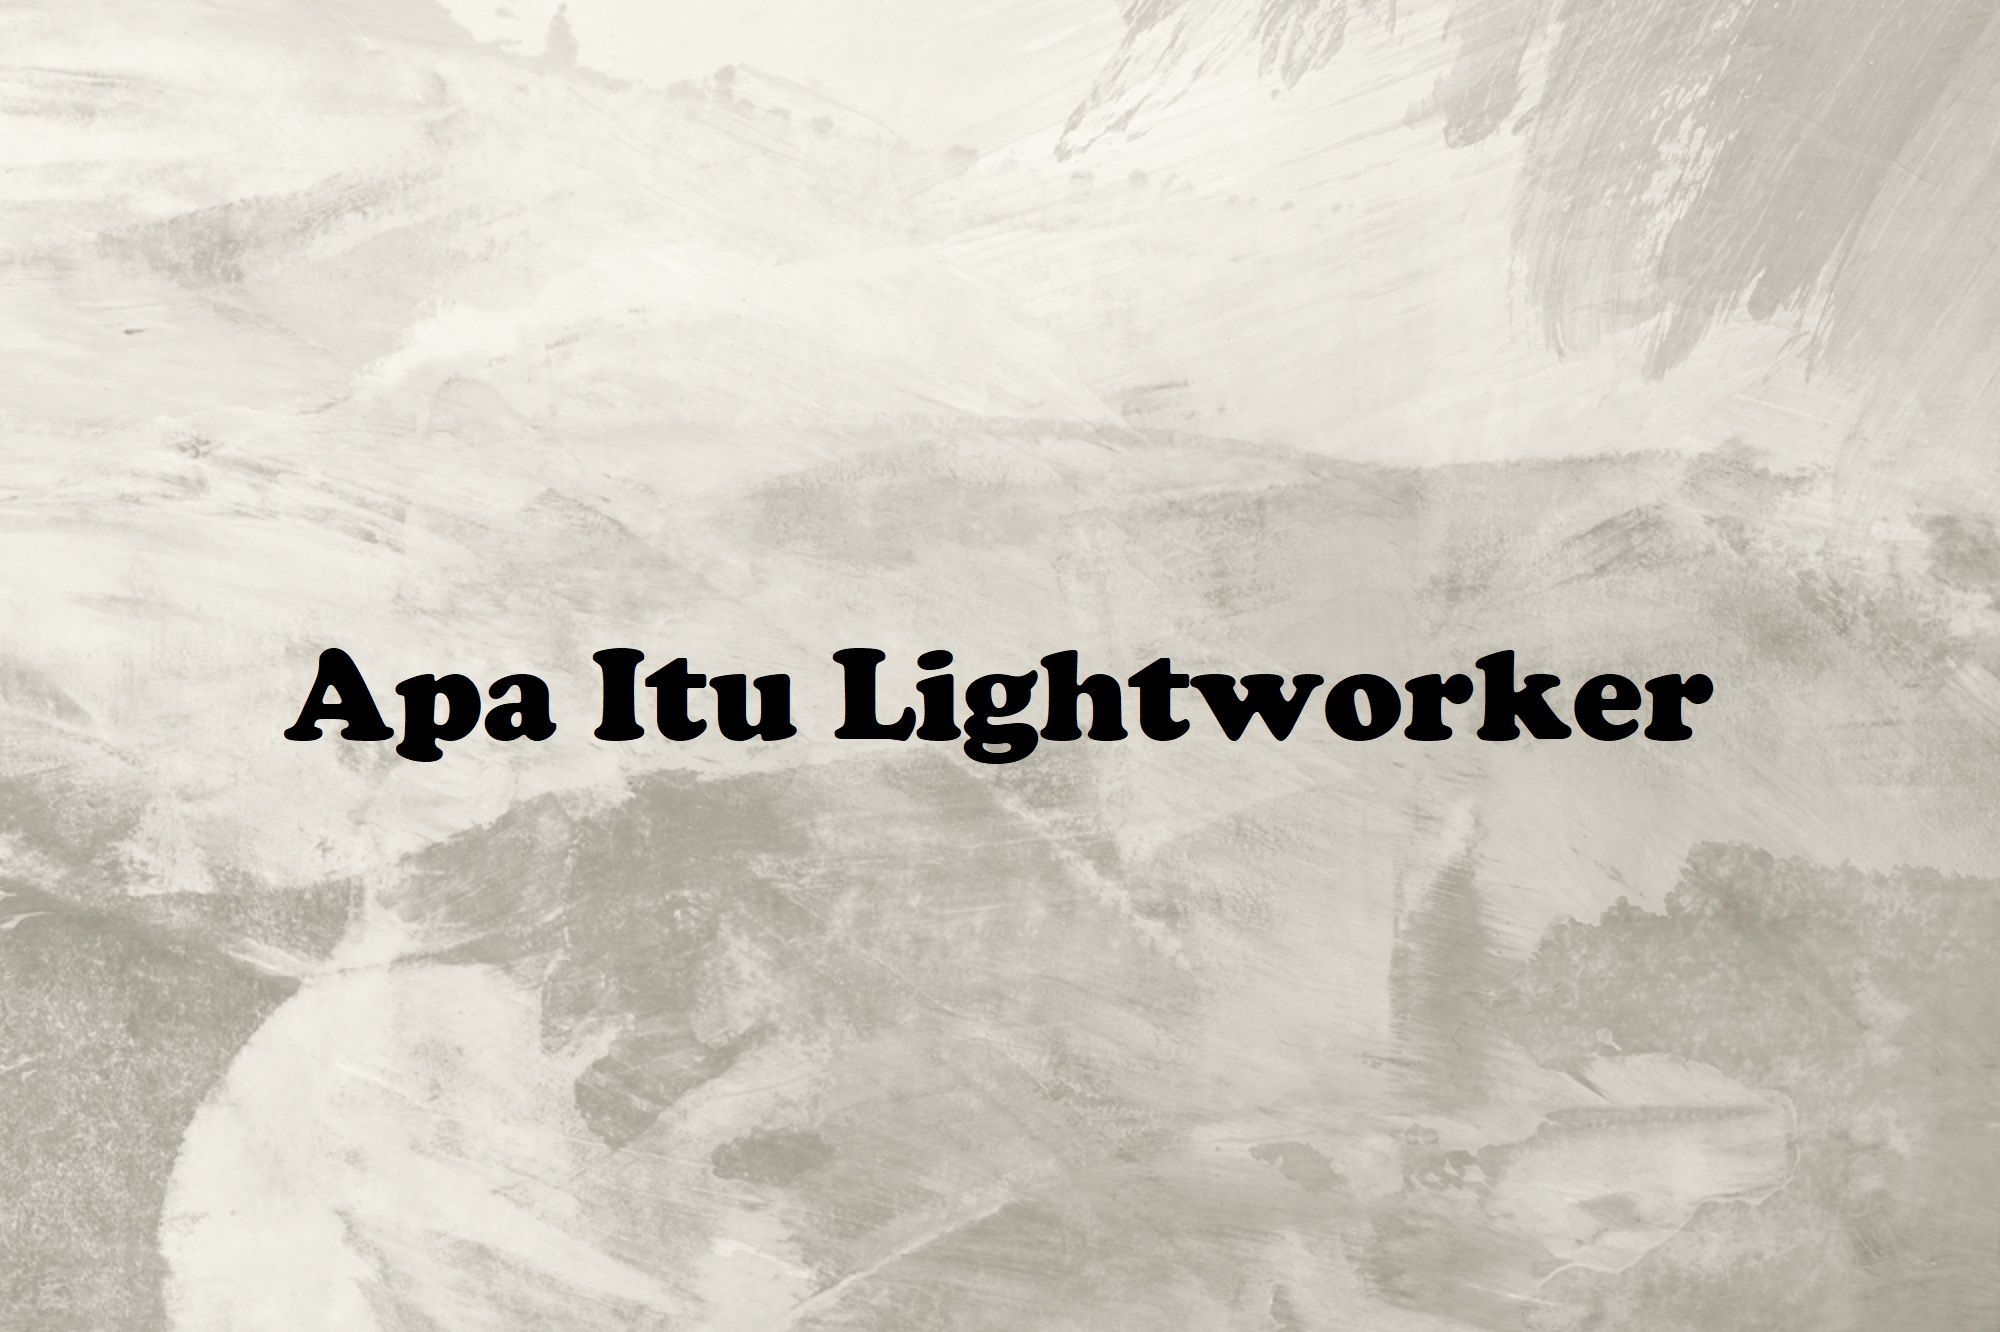 Ternyata Ini Arti Kata Lightworker dalam Bahasa Gaul Viral di TikTok, Simak Juga Istilah Gaul Lainnya!